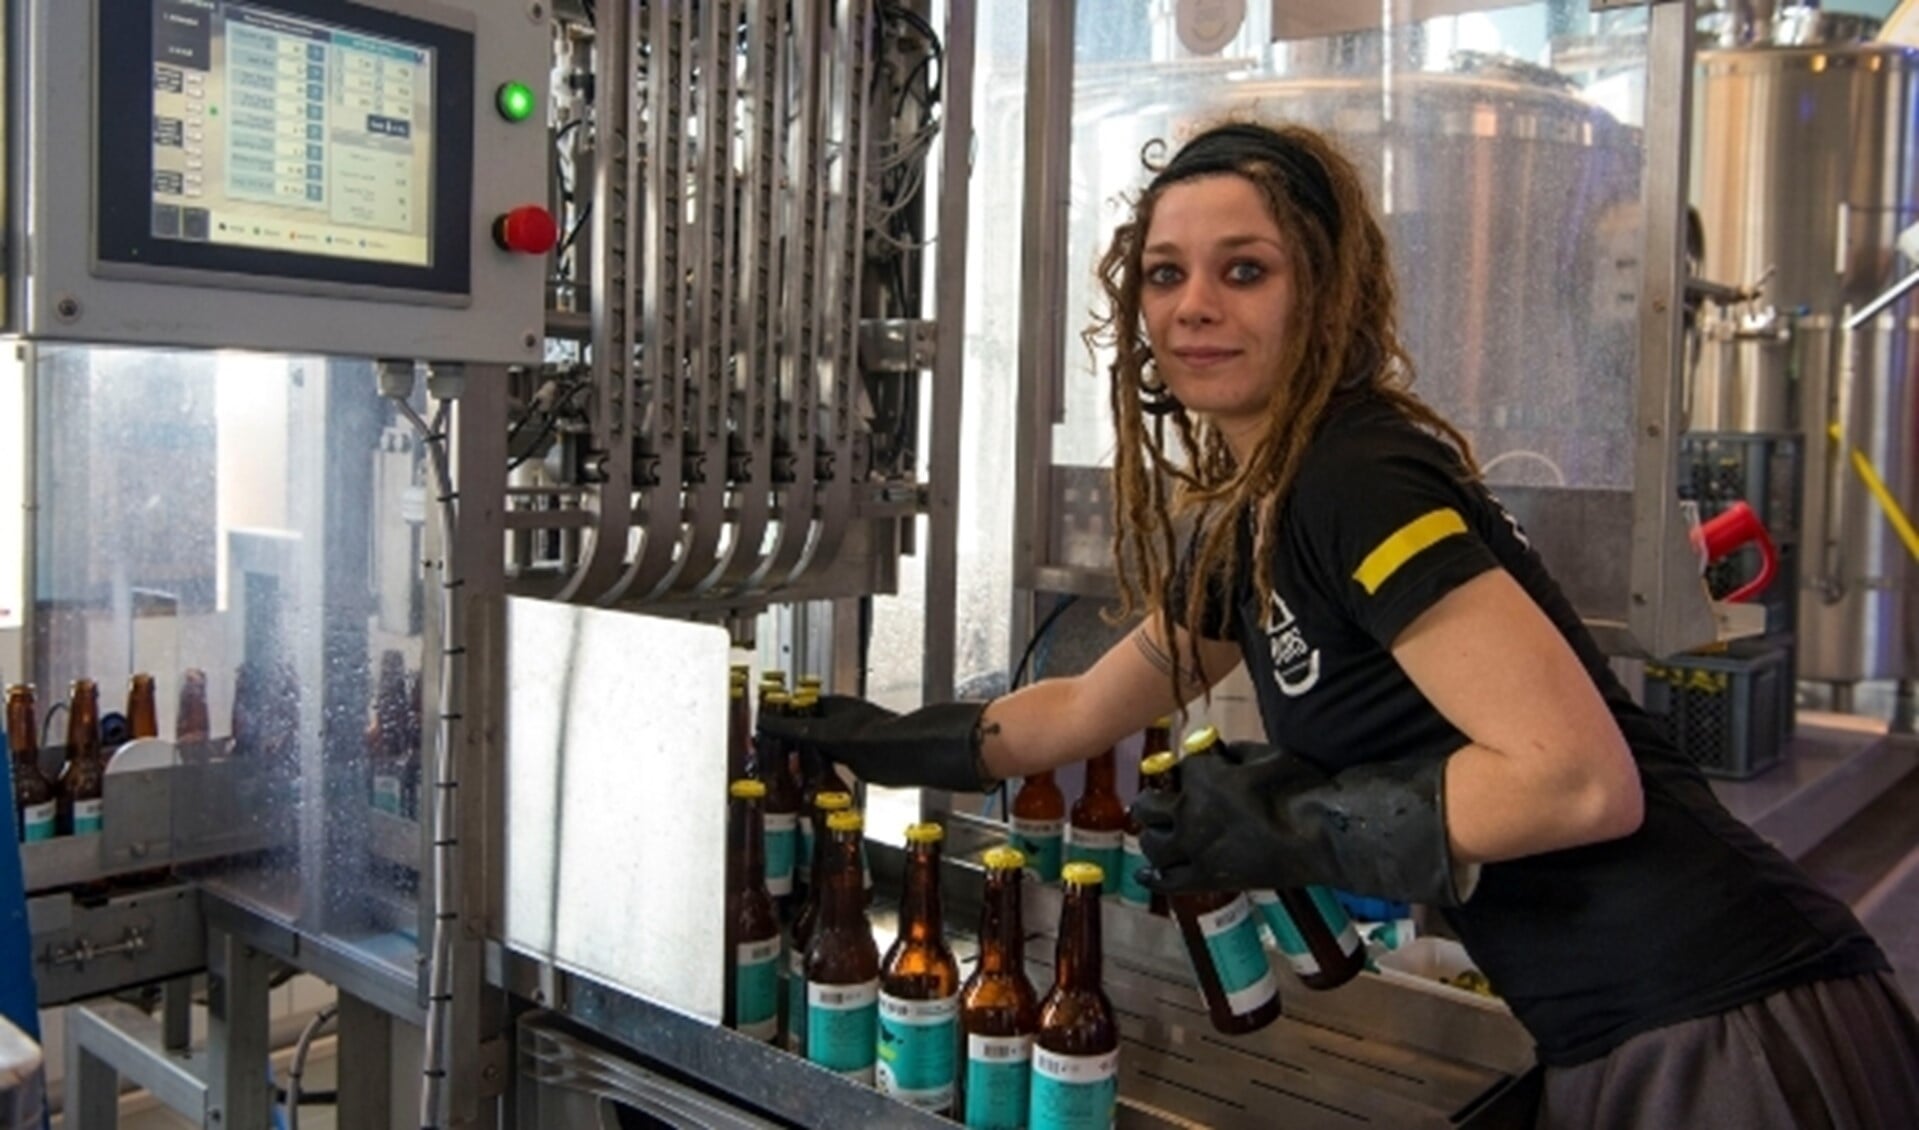 Brouwmeester Sophia Franx van brouwerij Durs heeft een speciaal vrouwenbier ontwikkeld. 